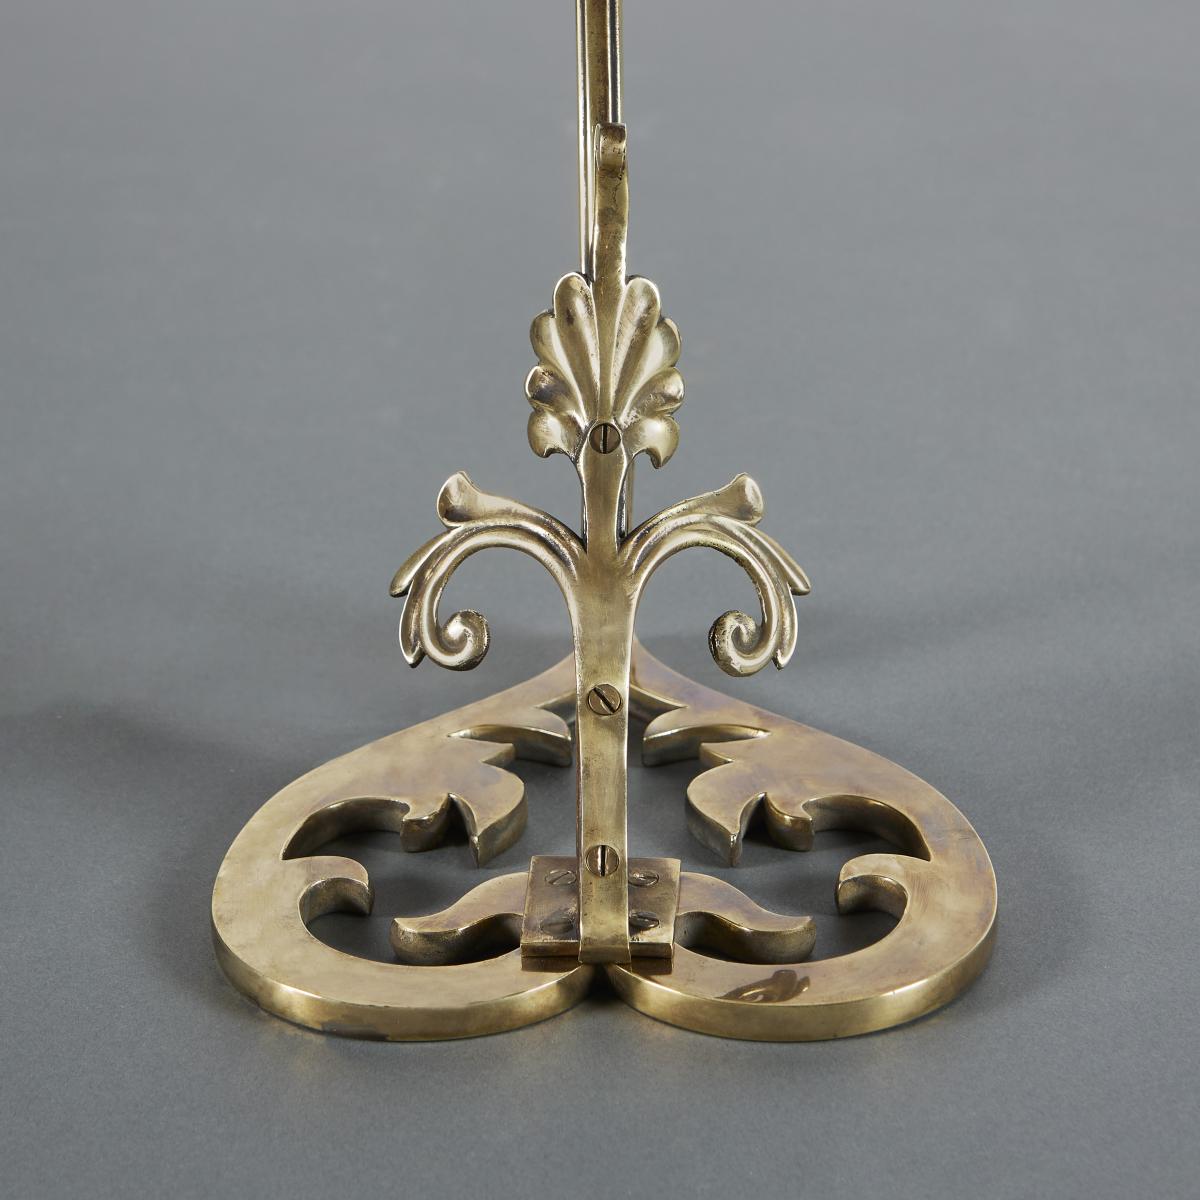 Unusual Brass Lamp By W.A.S Benson